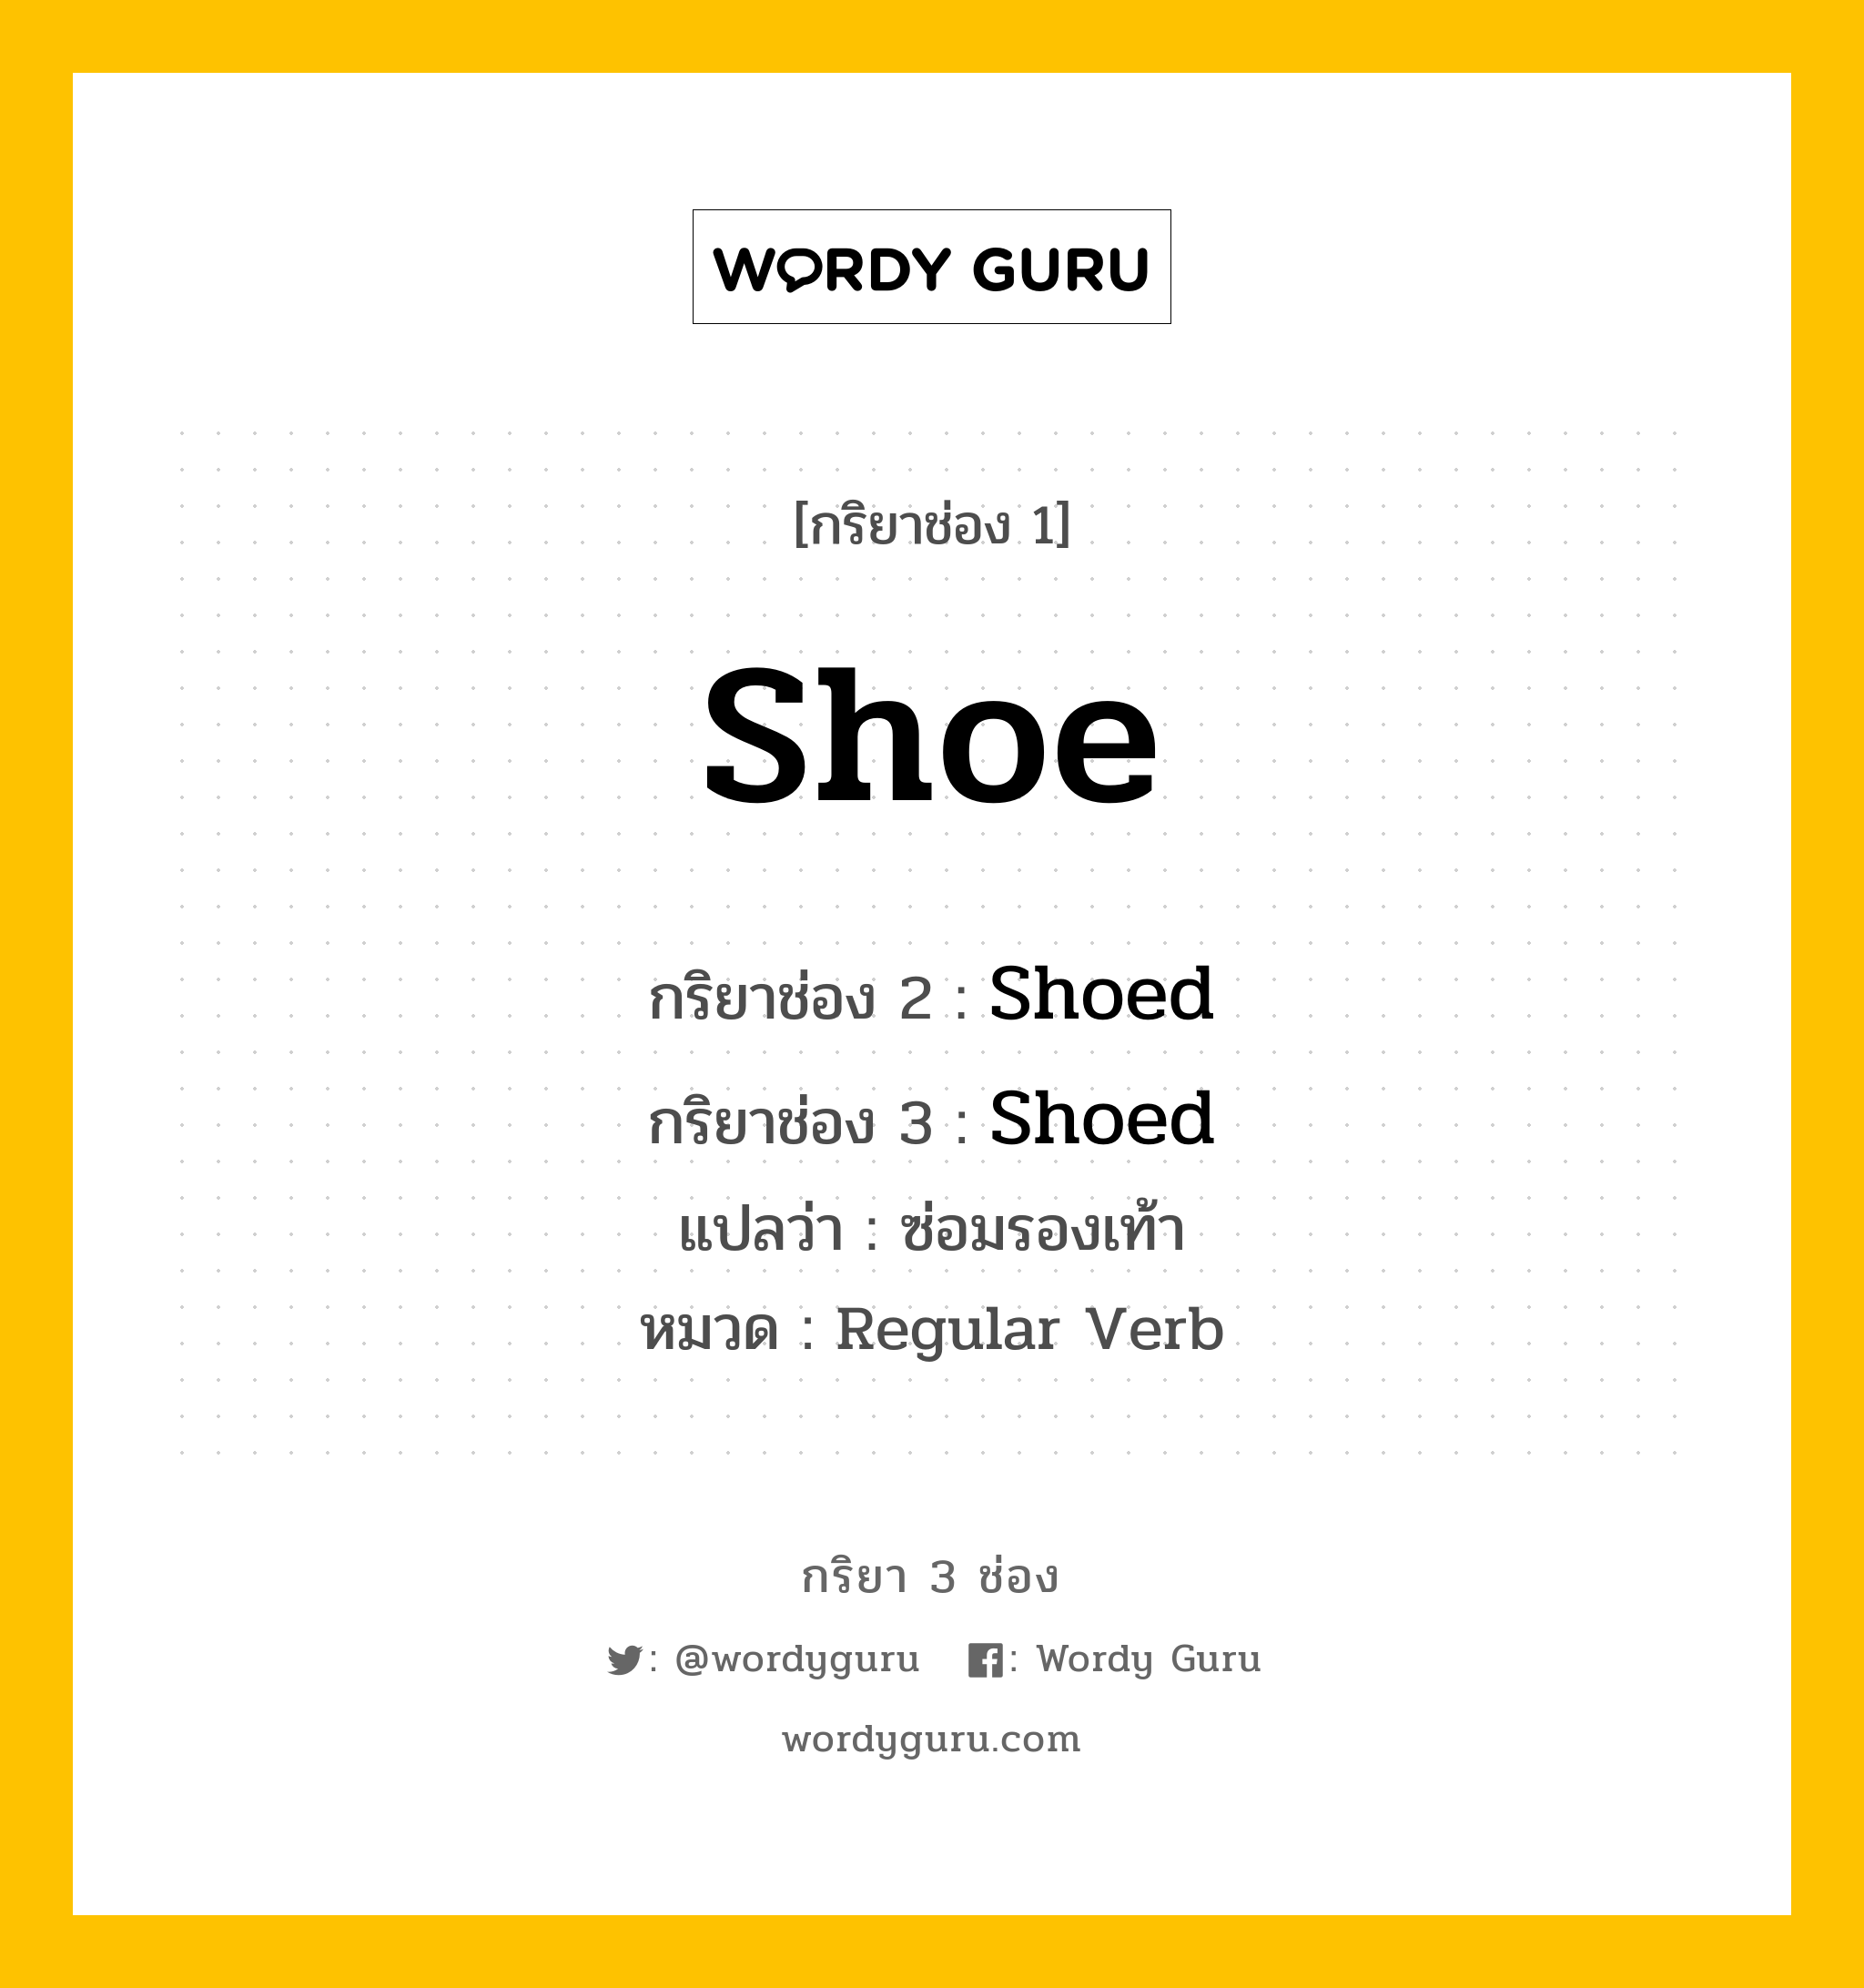 กริยา 3 ช่อง: Shoe ช่อง 2 Shoe ช่อง 3 คืออะไร, กริยาช่อง 1 Shoe กริยาช่อง 2 Shoed กริยาช่อง 3 Shoed แปลว่า ซ่อมรองเท้า หมวด Regular Verb มีหลายแบบ y หมวด Regular Verb